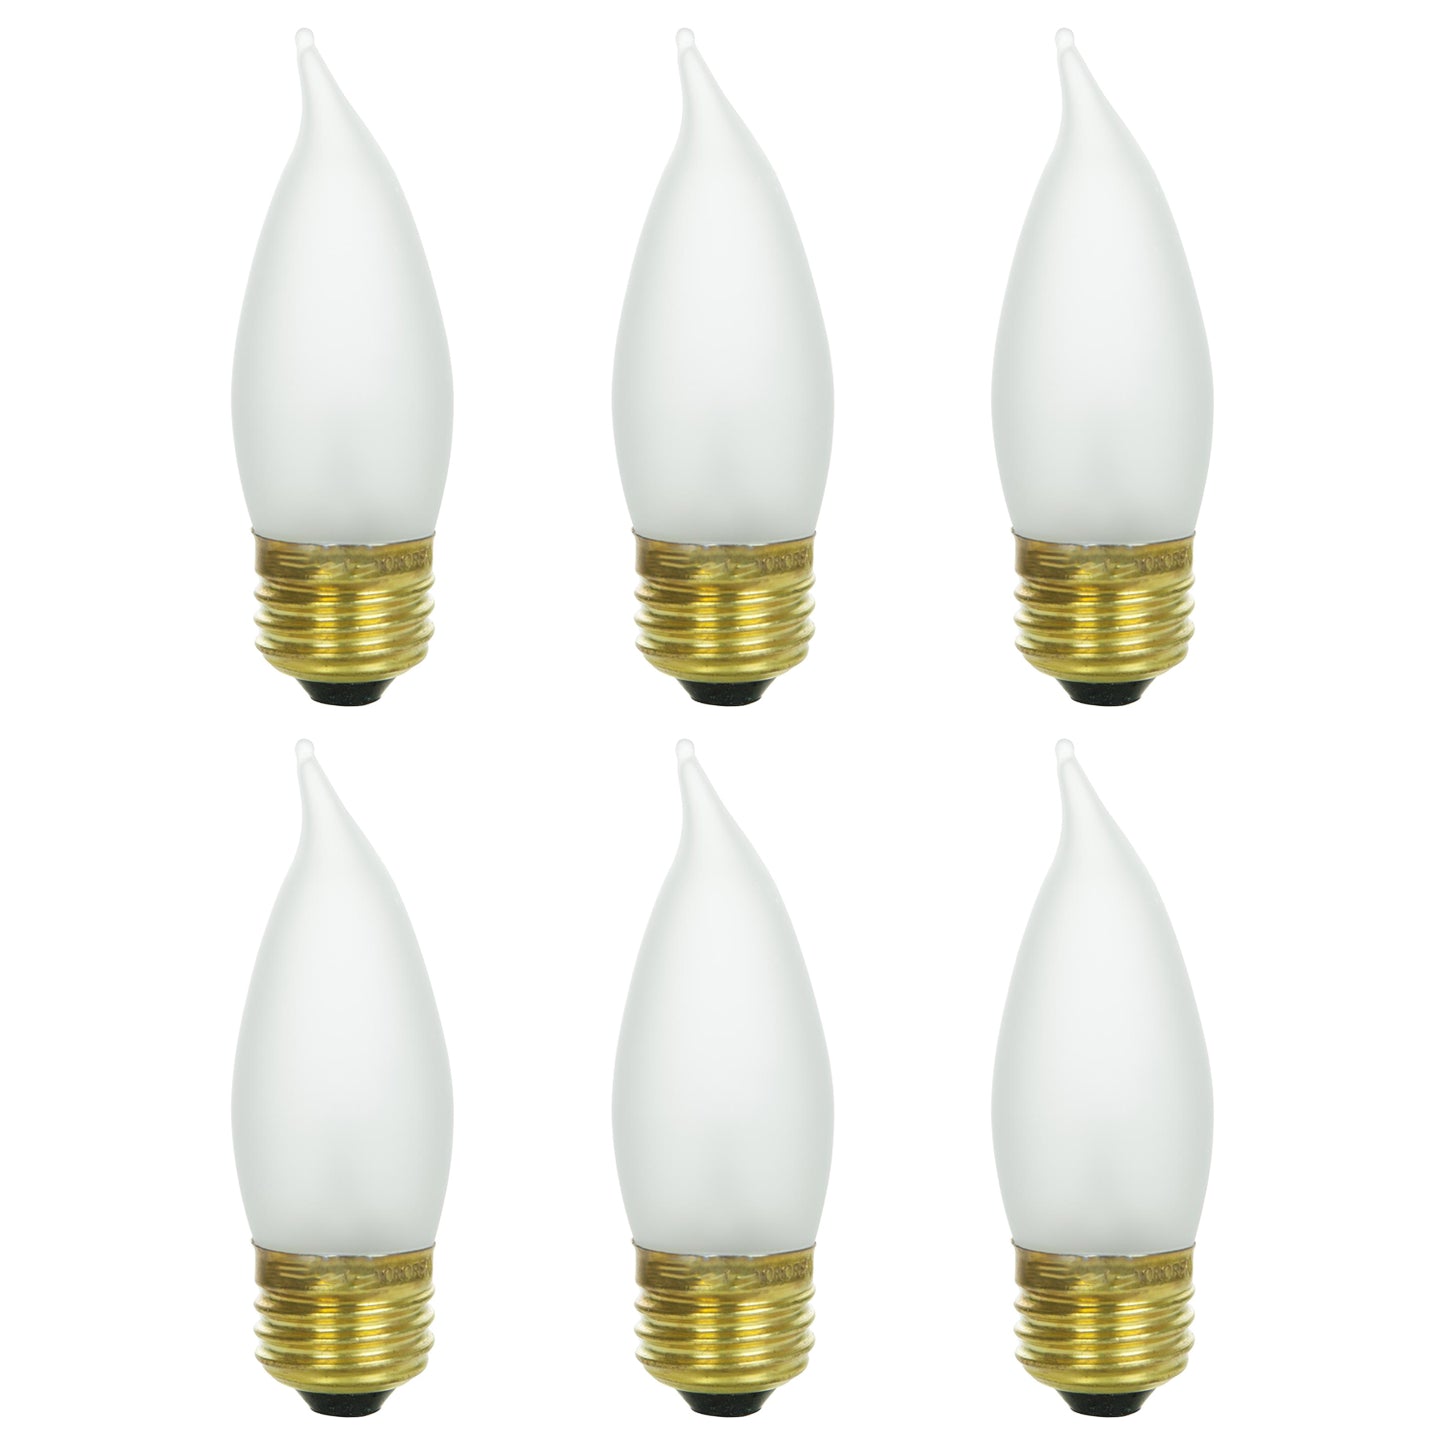 Sunlite 60EFF/32/3 60 Watt Flame Lamp Medium (E26) Base